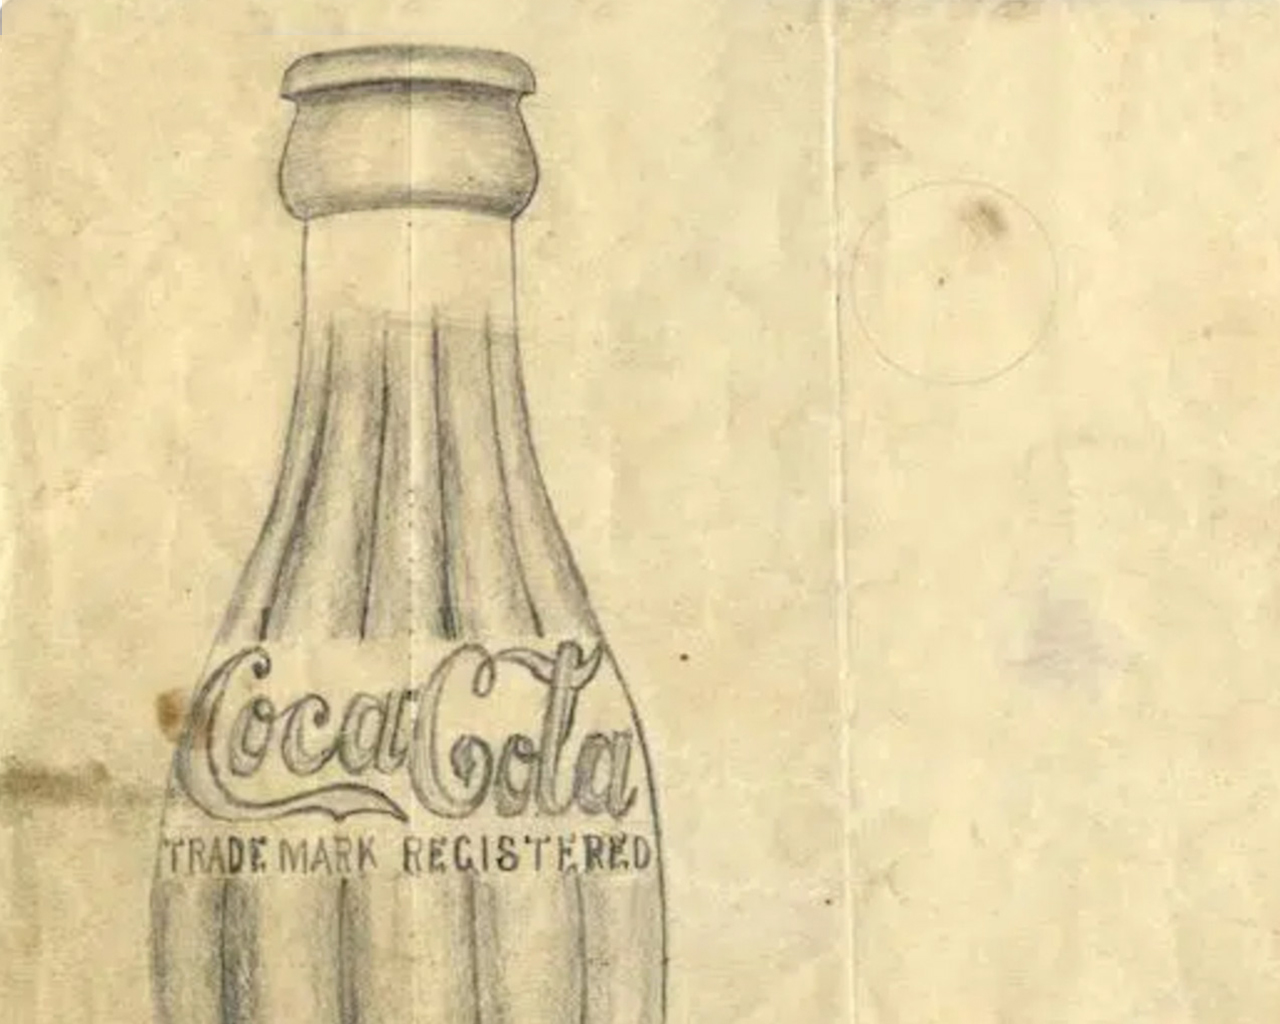 Ilustración antigua de una botella de Coca-Cola